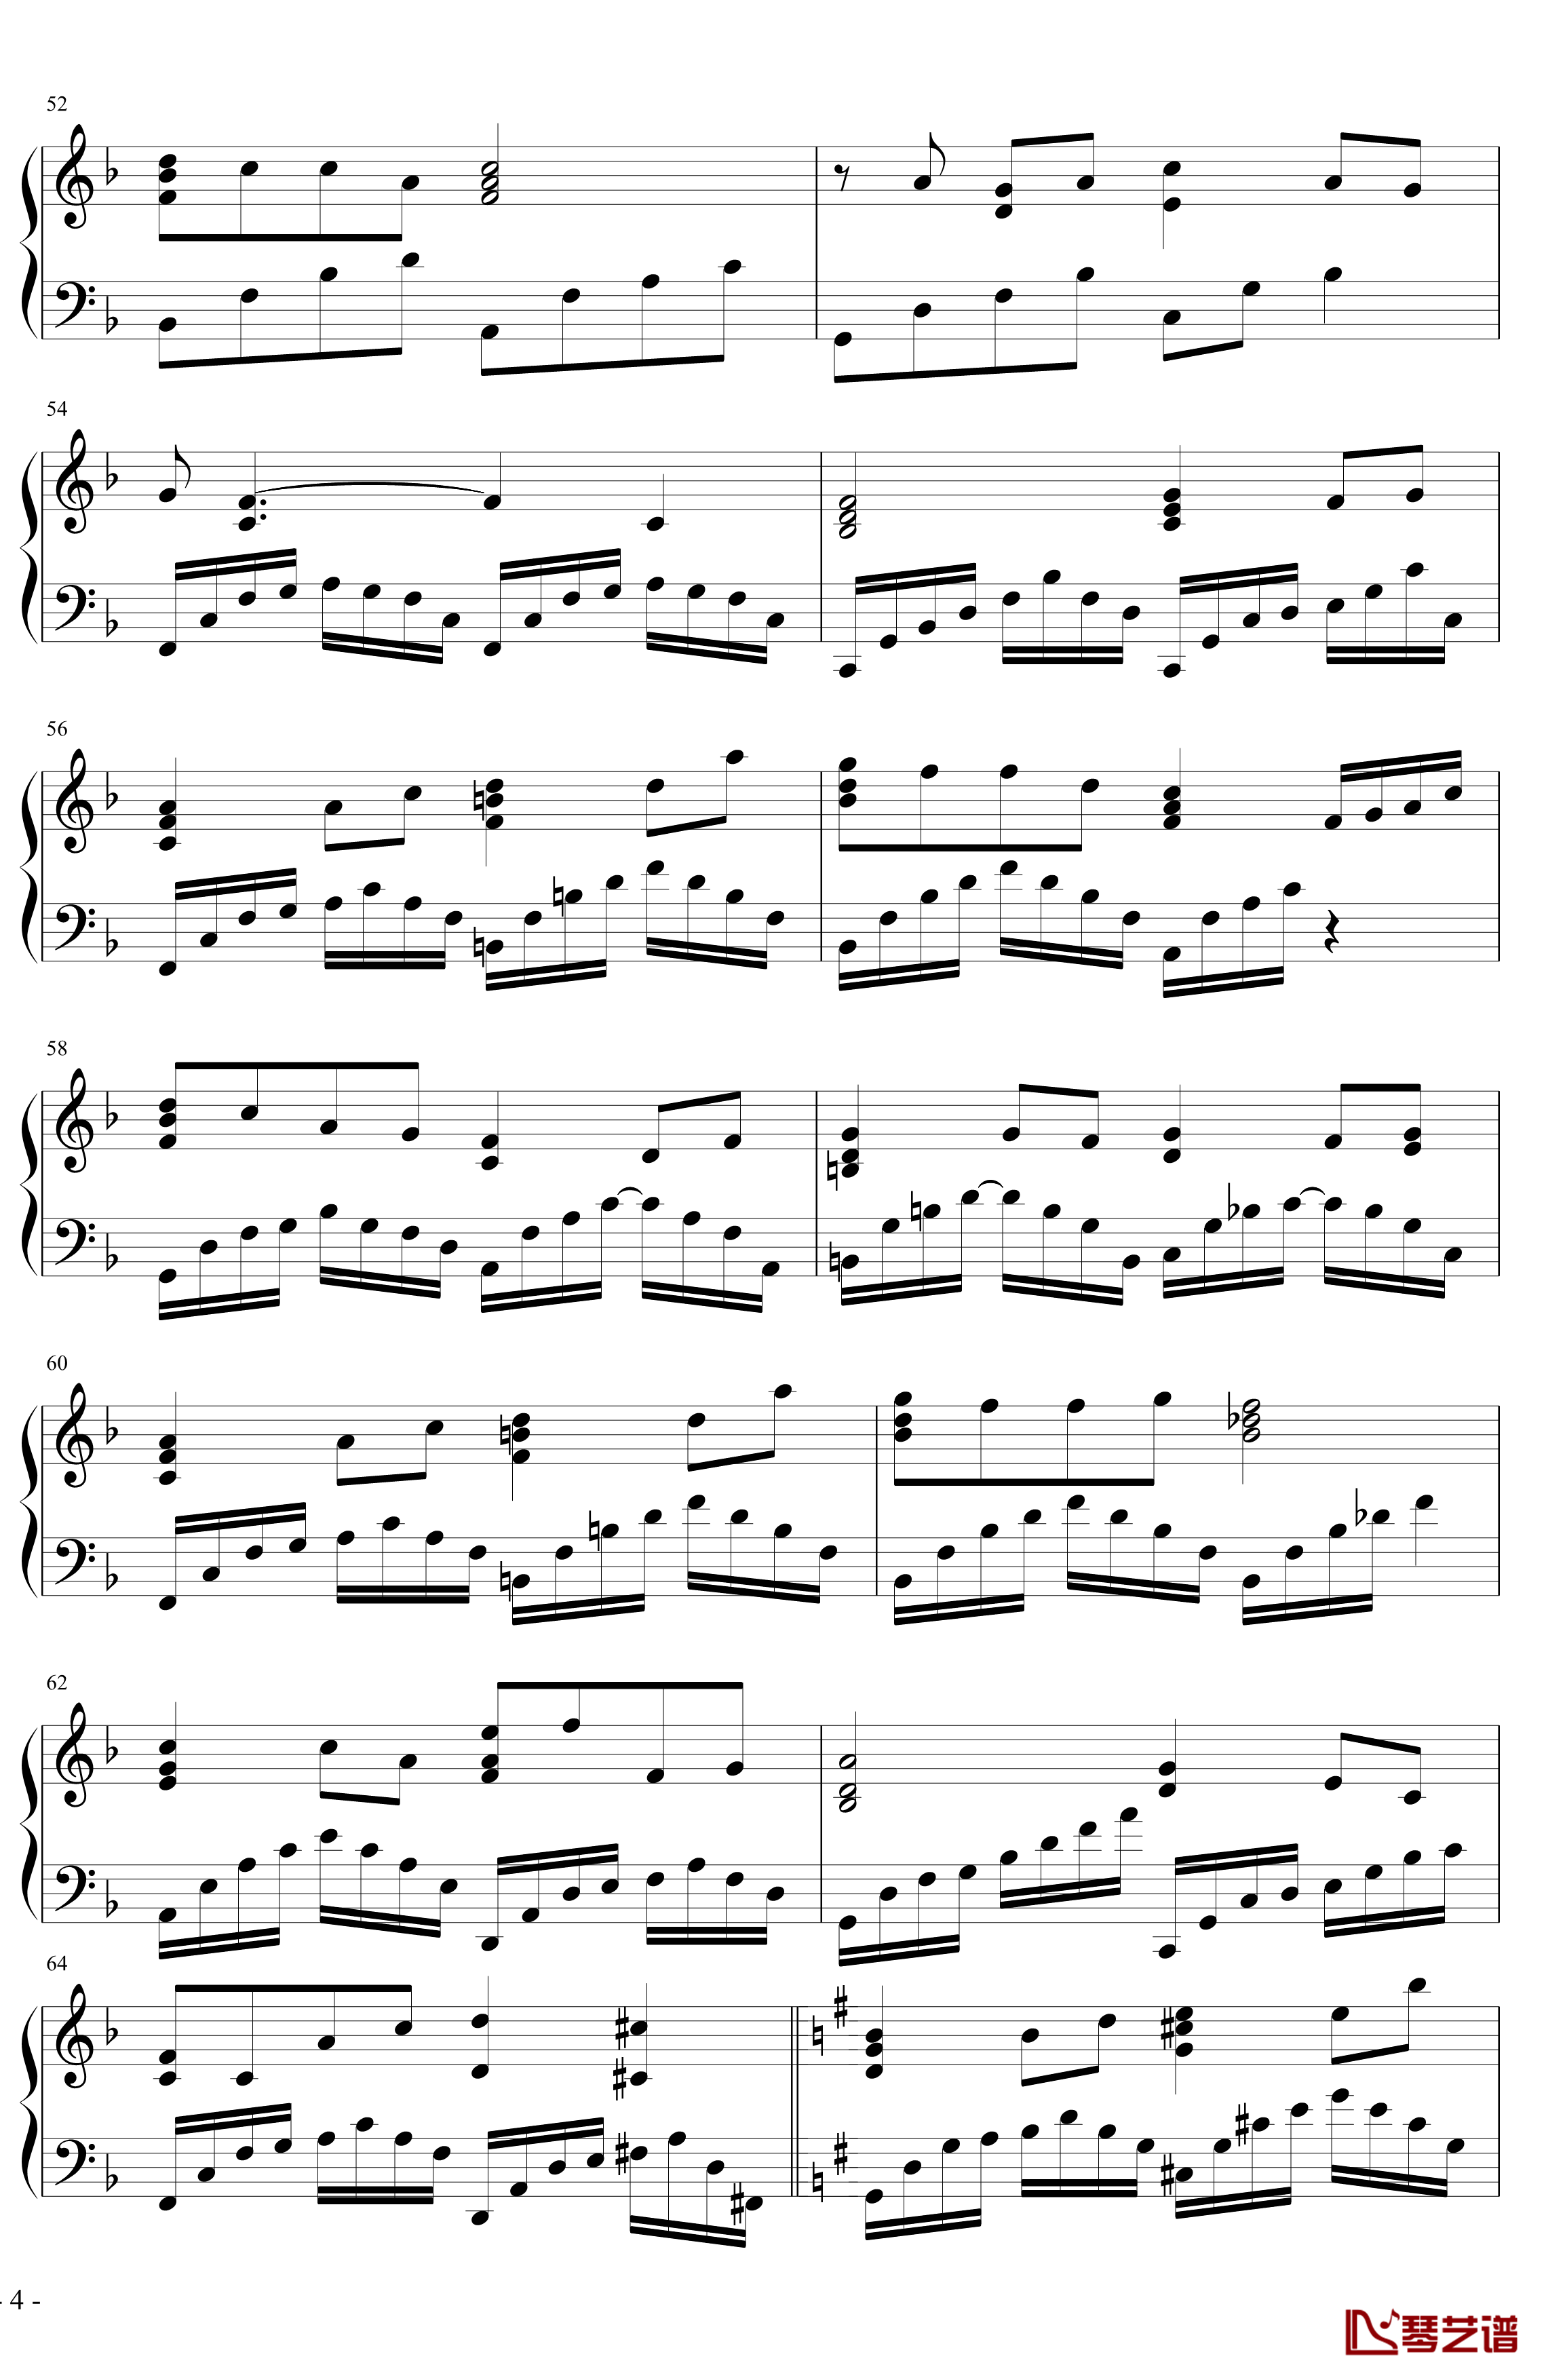 菊花台钢琴谱-超级演奏版-周杰伦4